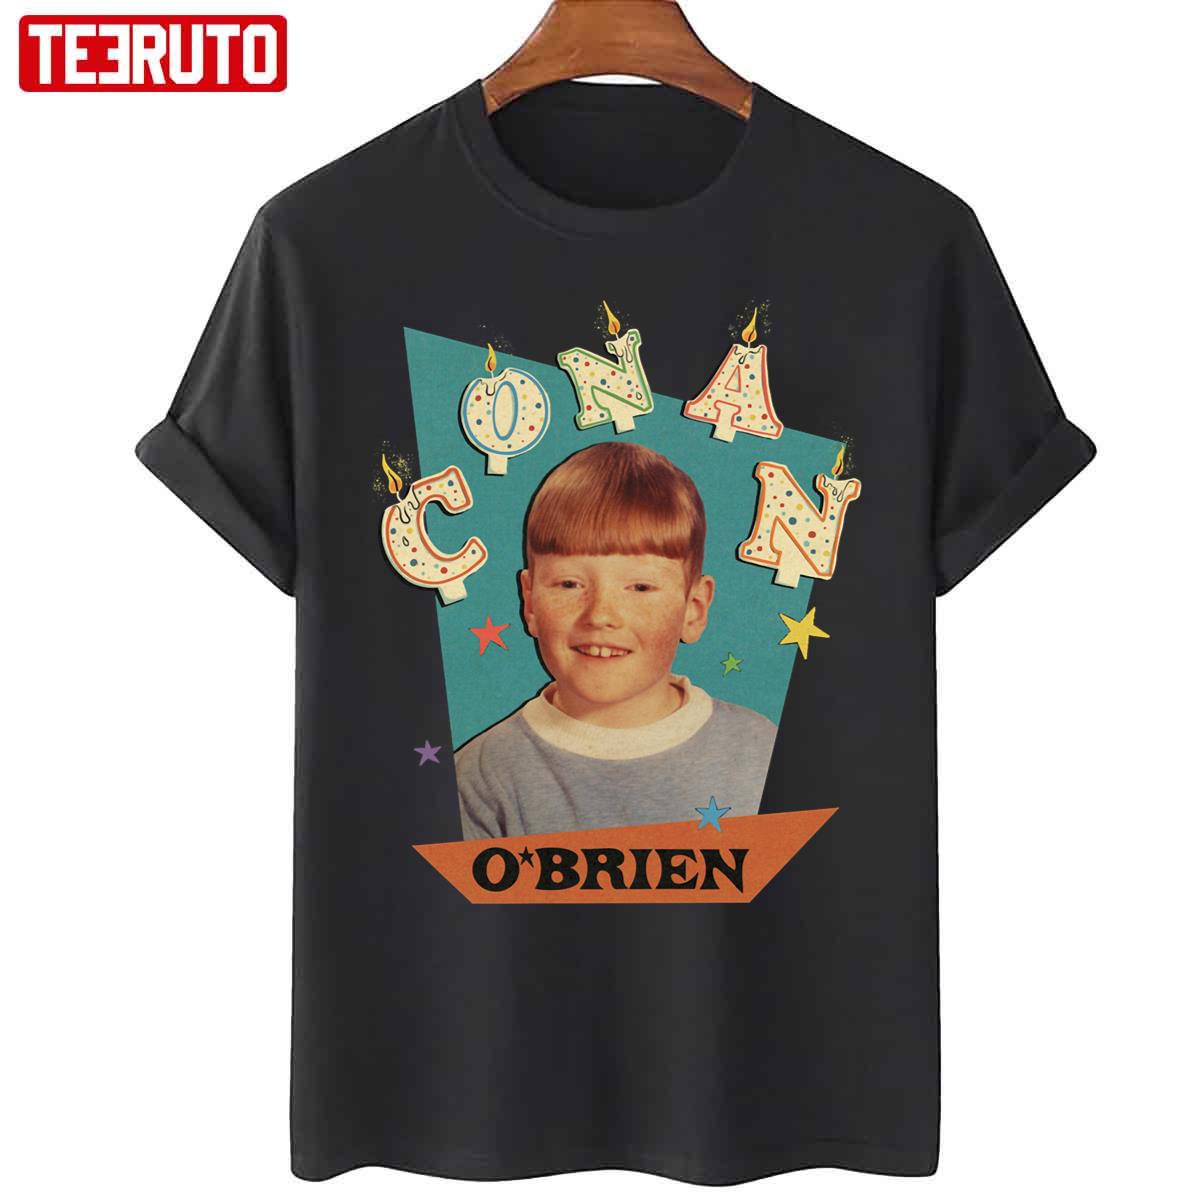 Conan O’brien Young Unisex T-Shirt